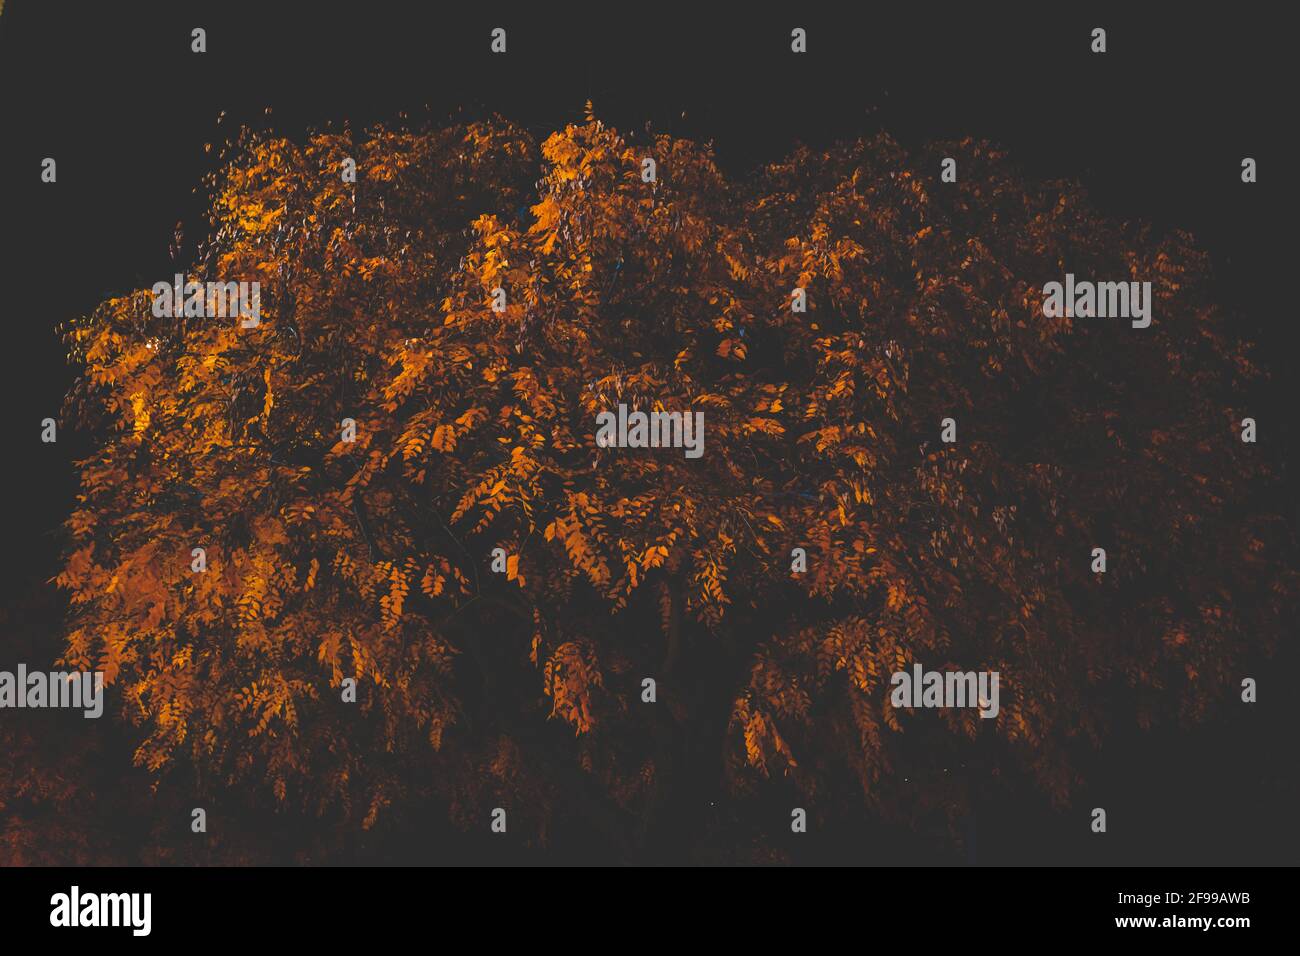 Di notte - chiaro e scuro - alberi e foglie in autunno, illuminato Foto Stock